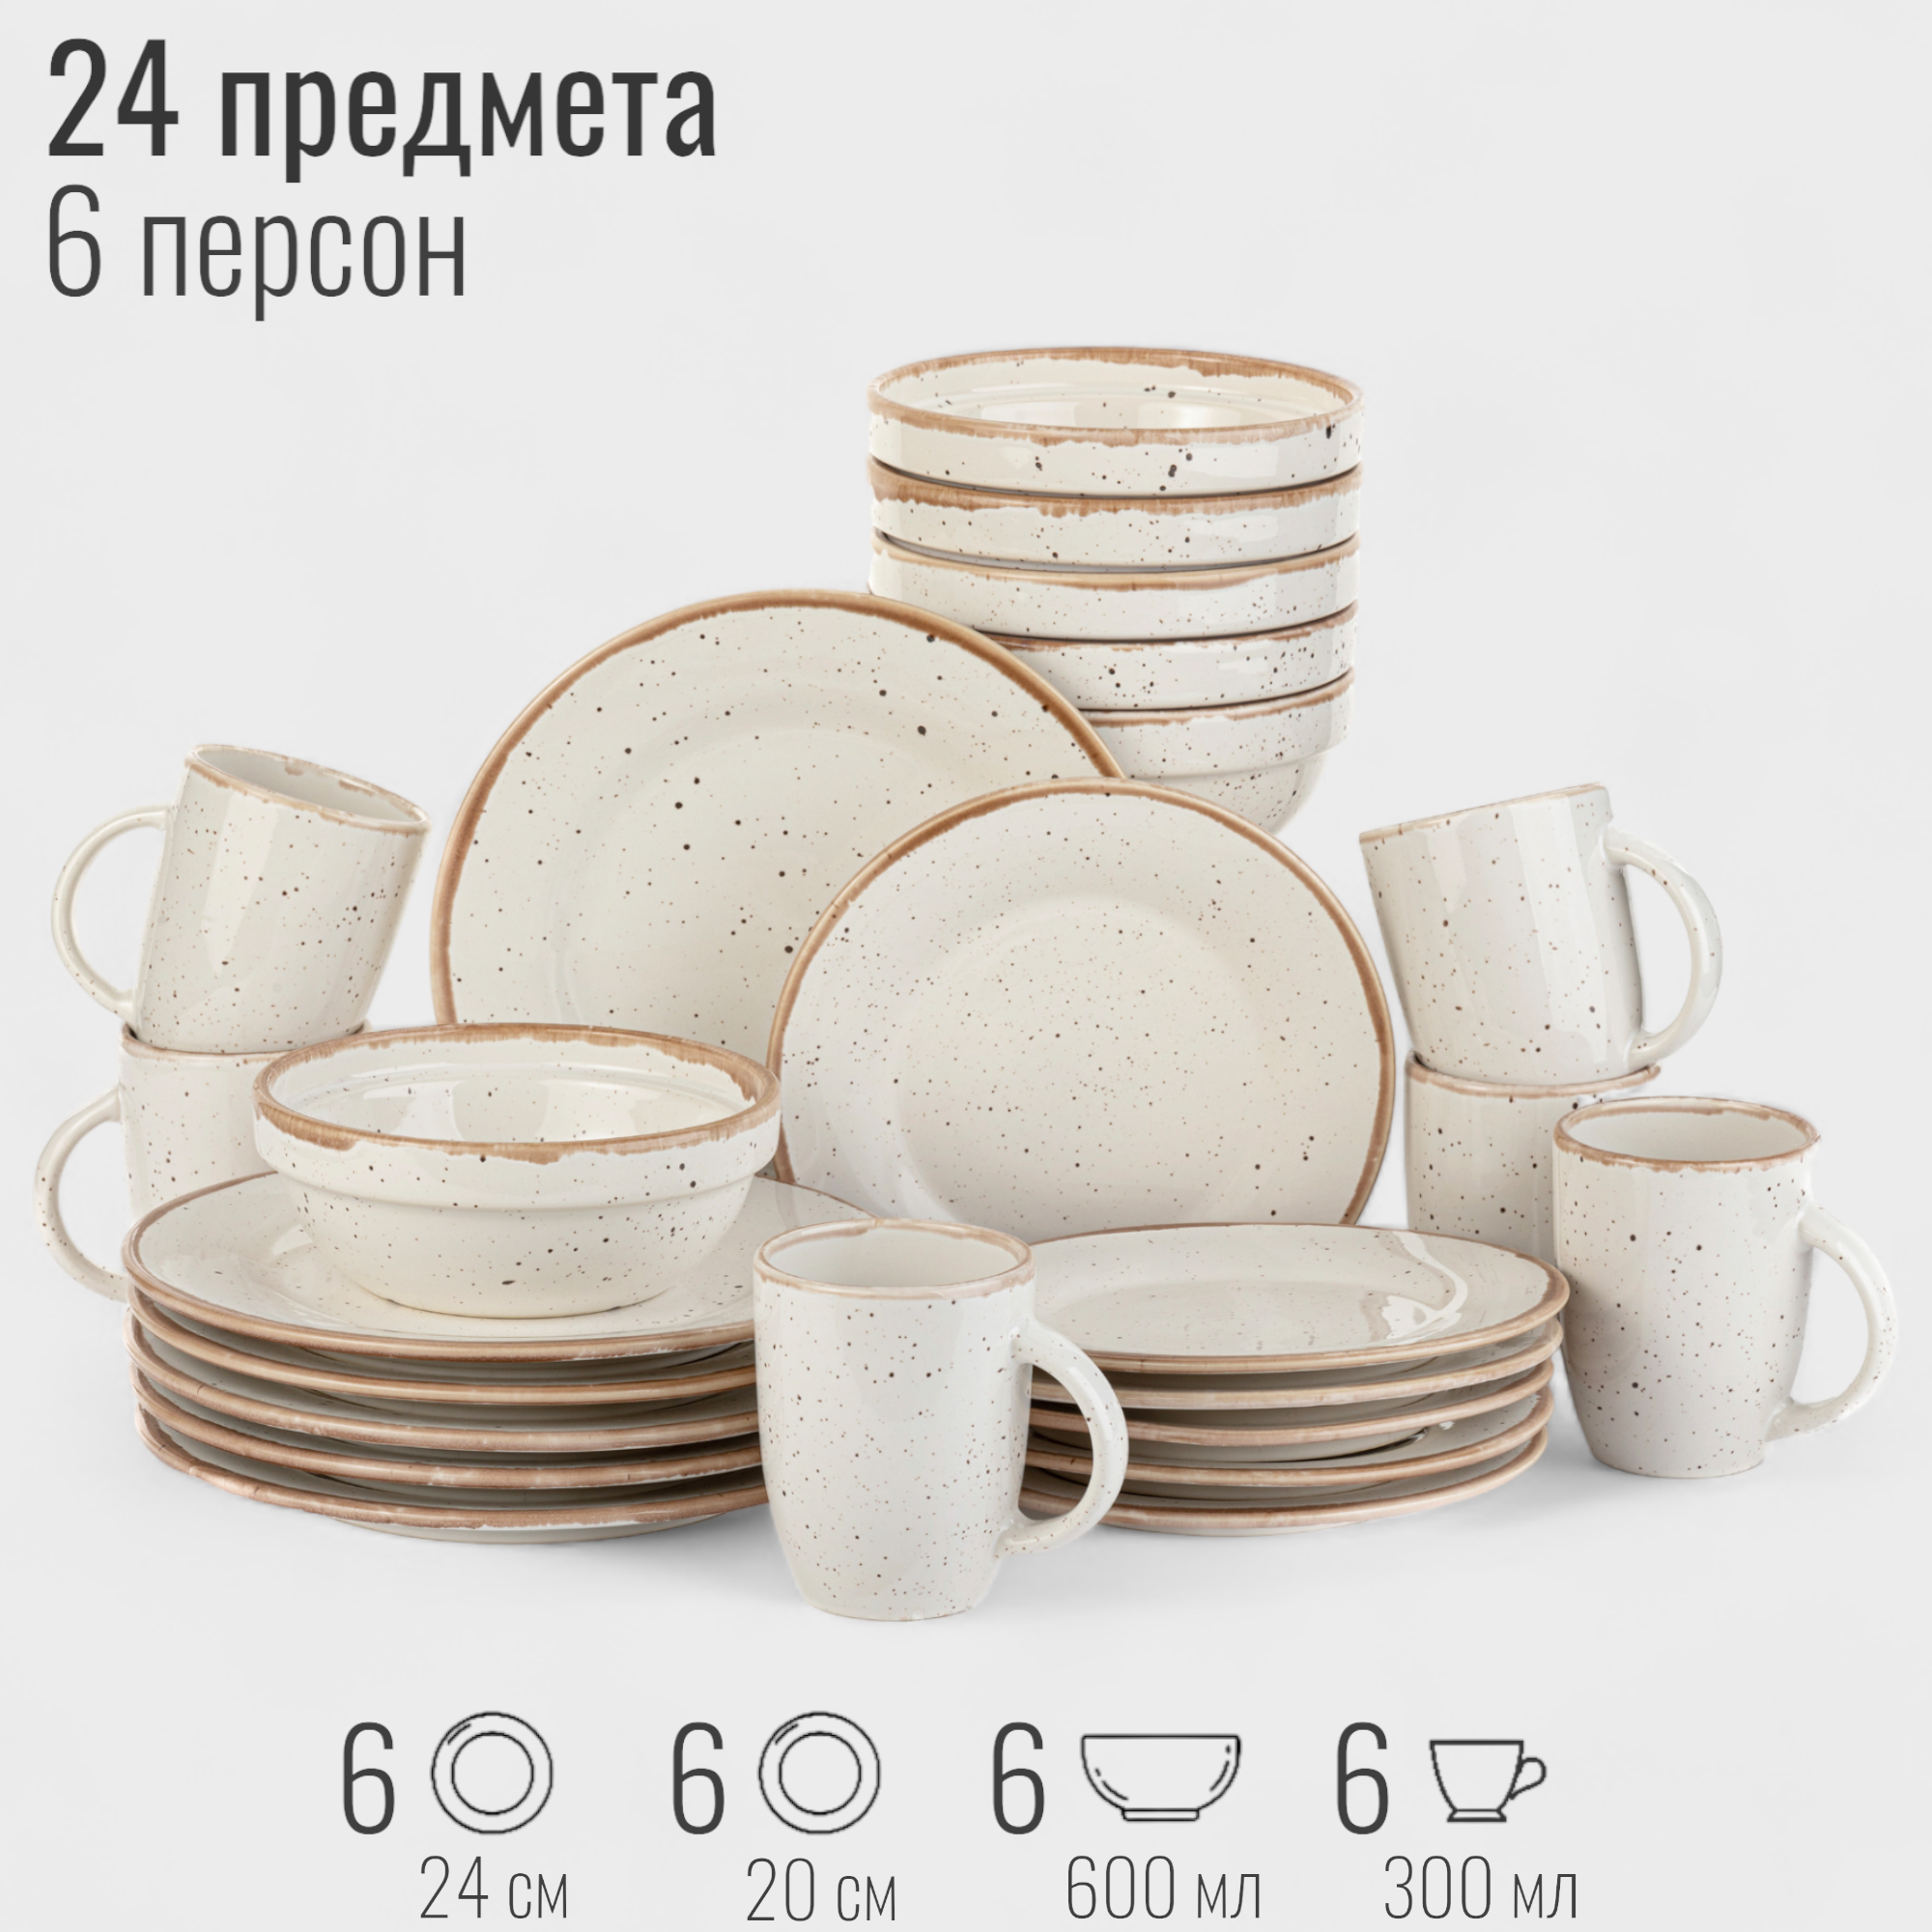 Набор посуды столовой на 6 персон, 24 предмета "Пунто-Бьянка", фарфор, сервиз обеденный, цвет белый в крапинку